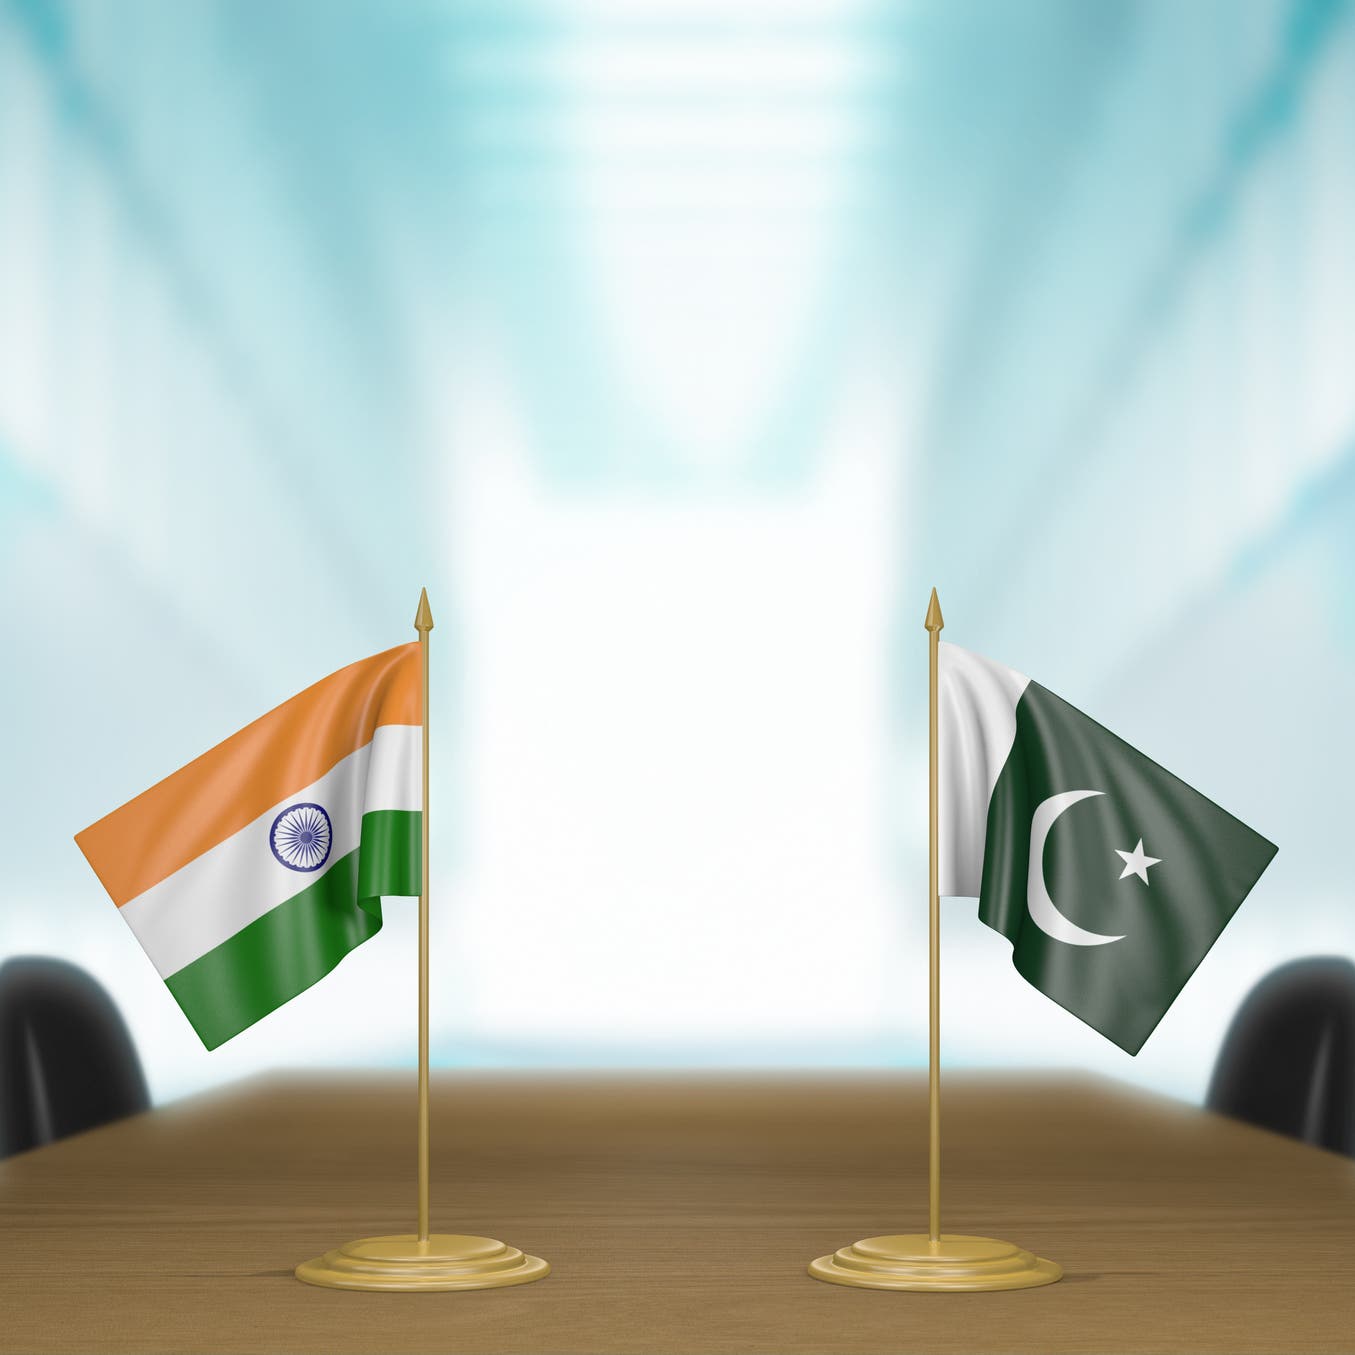 الهند تطرد مسؤولين اثنين بسفارة باكستان بتهمة التجسس